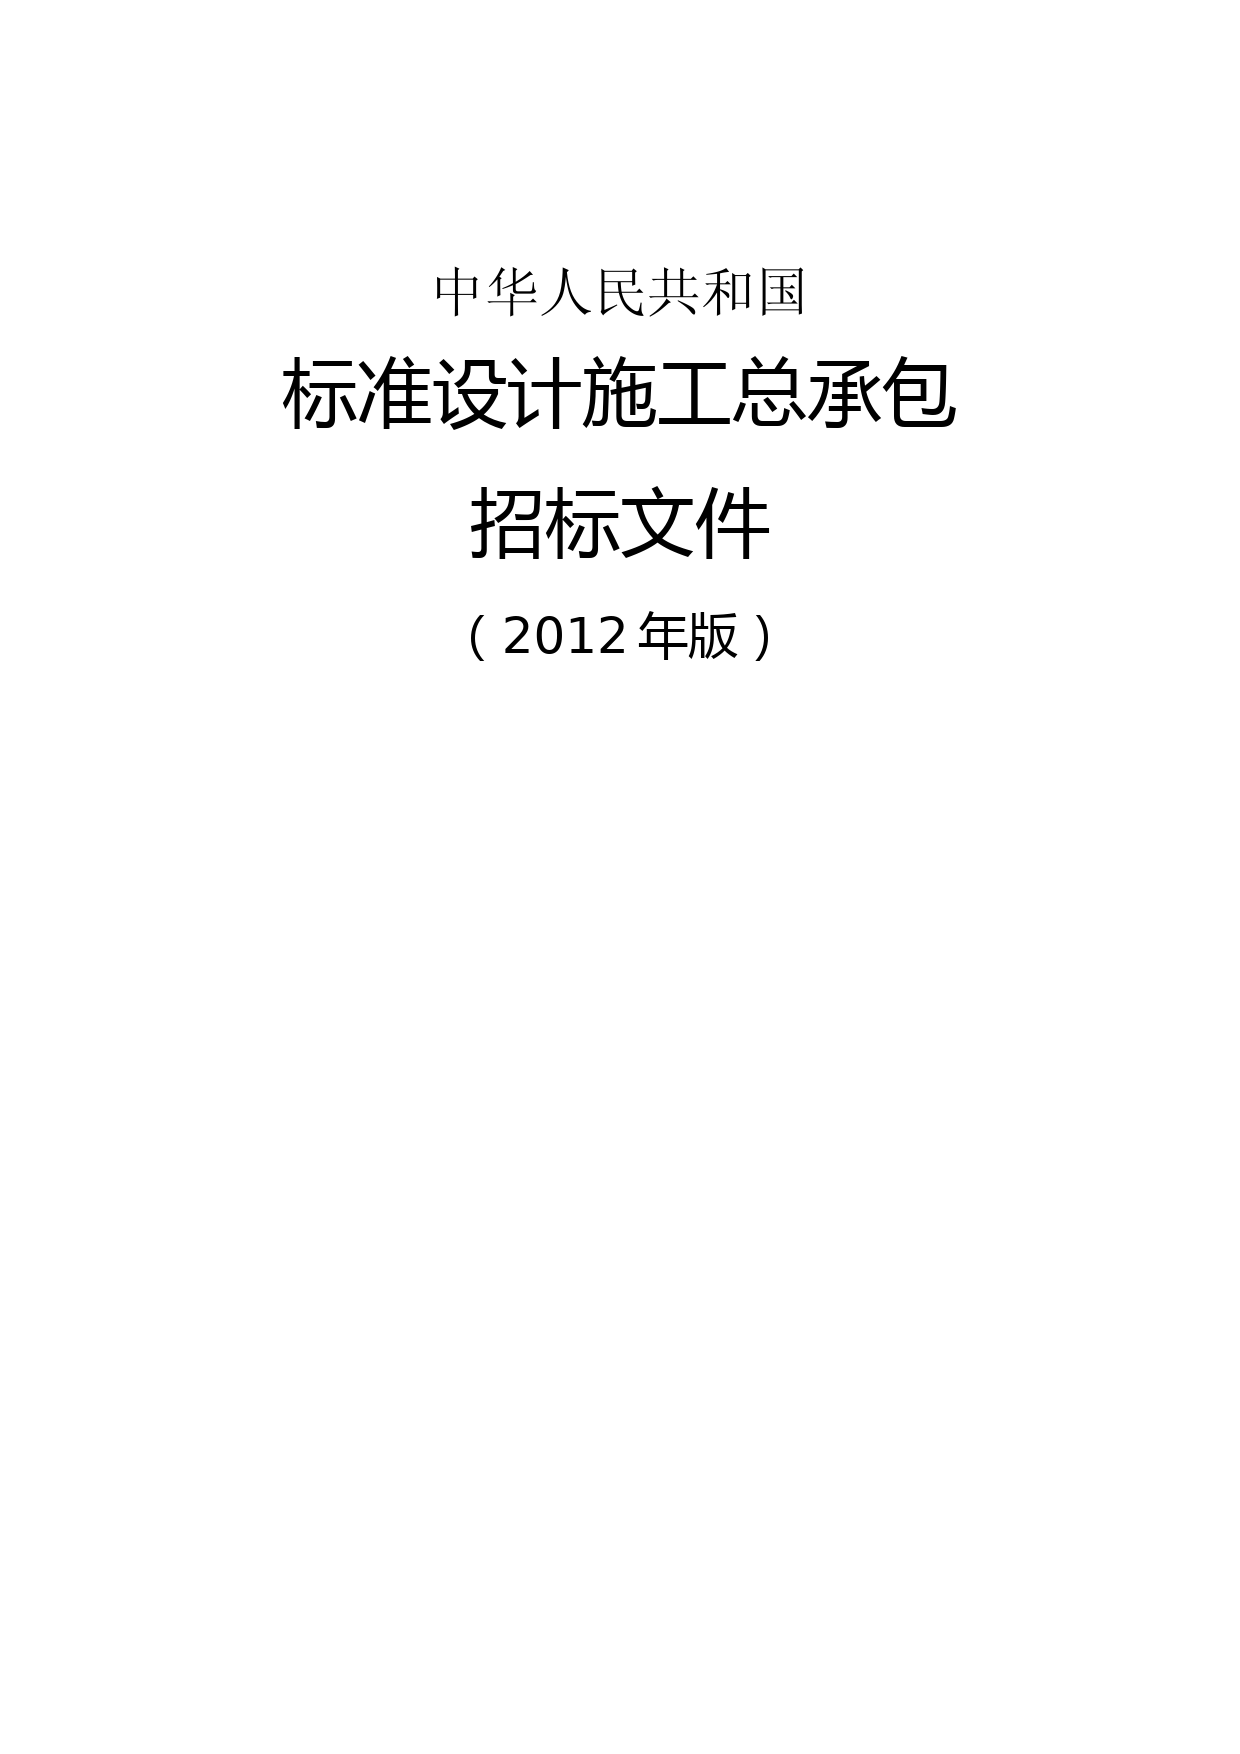 中华人民共和国标准设计施工总承包招标文件(2012年版) (2)